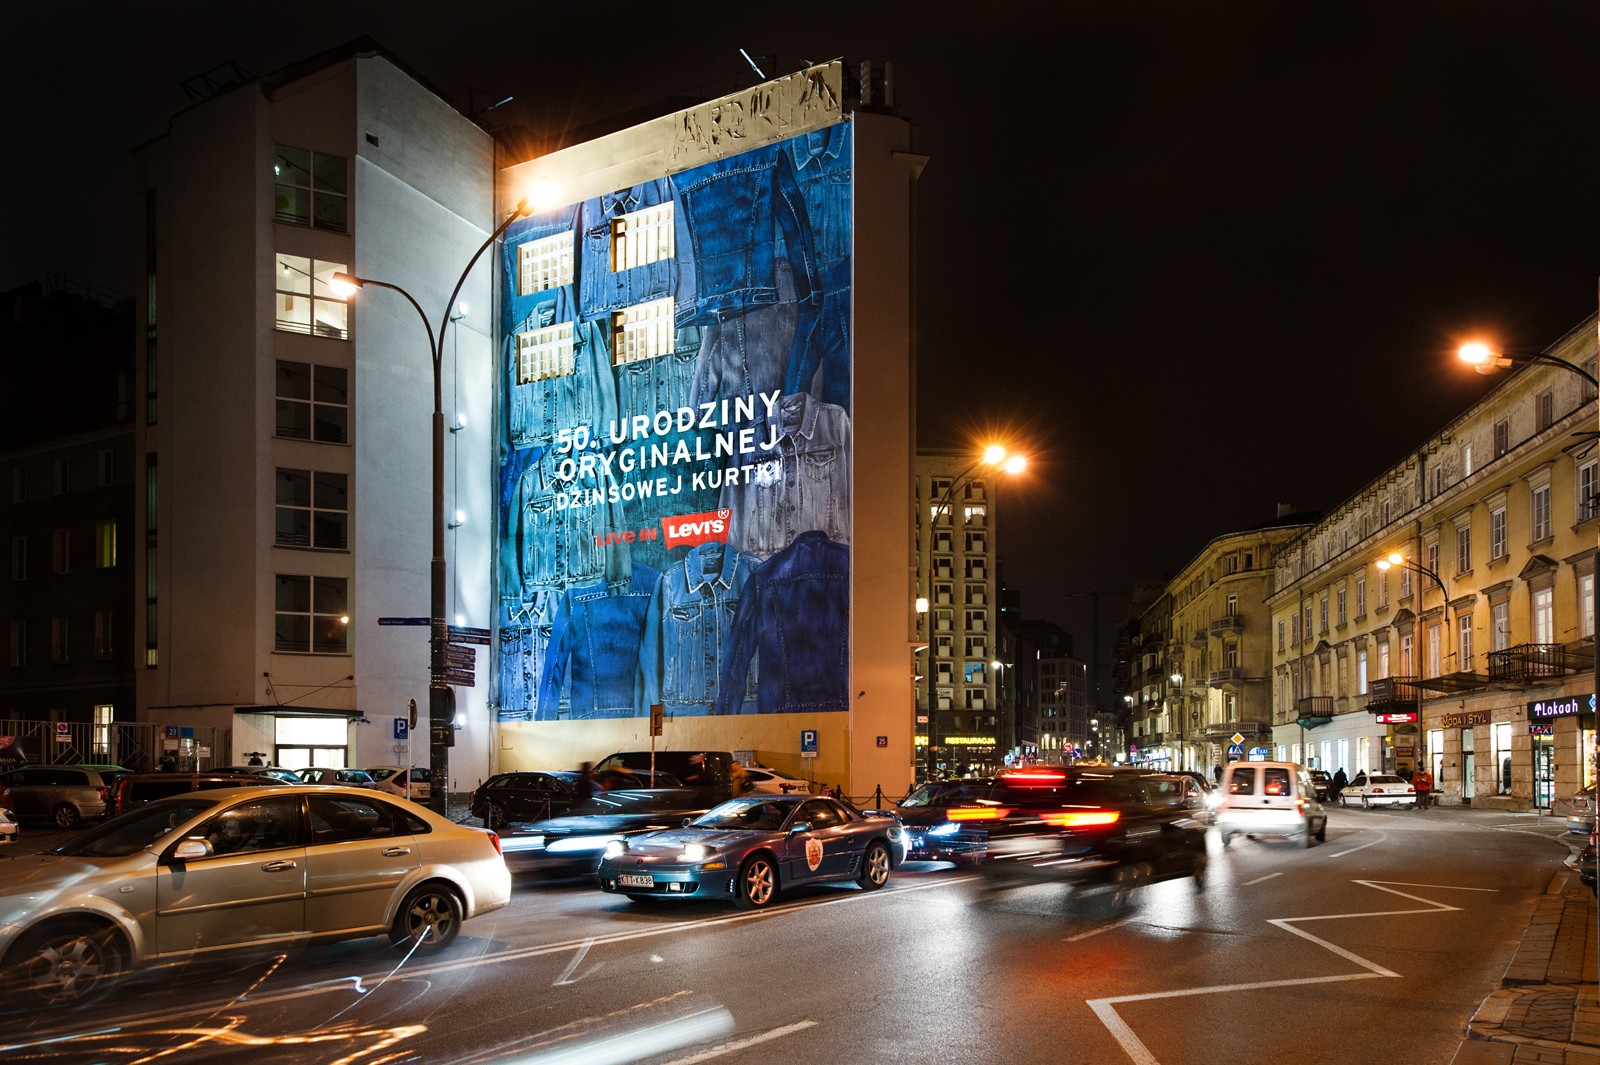 An advertising mural for Levis Company on the wall at Bracka street in Warsaw | 50.URODZINY ORYGINALNEJ DŻINSOWEJ KURTKI | Portfolio